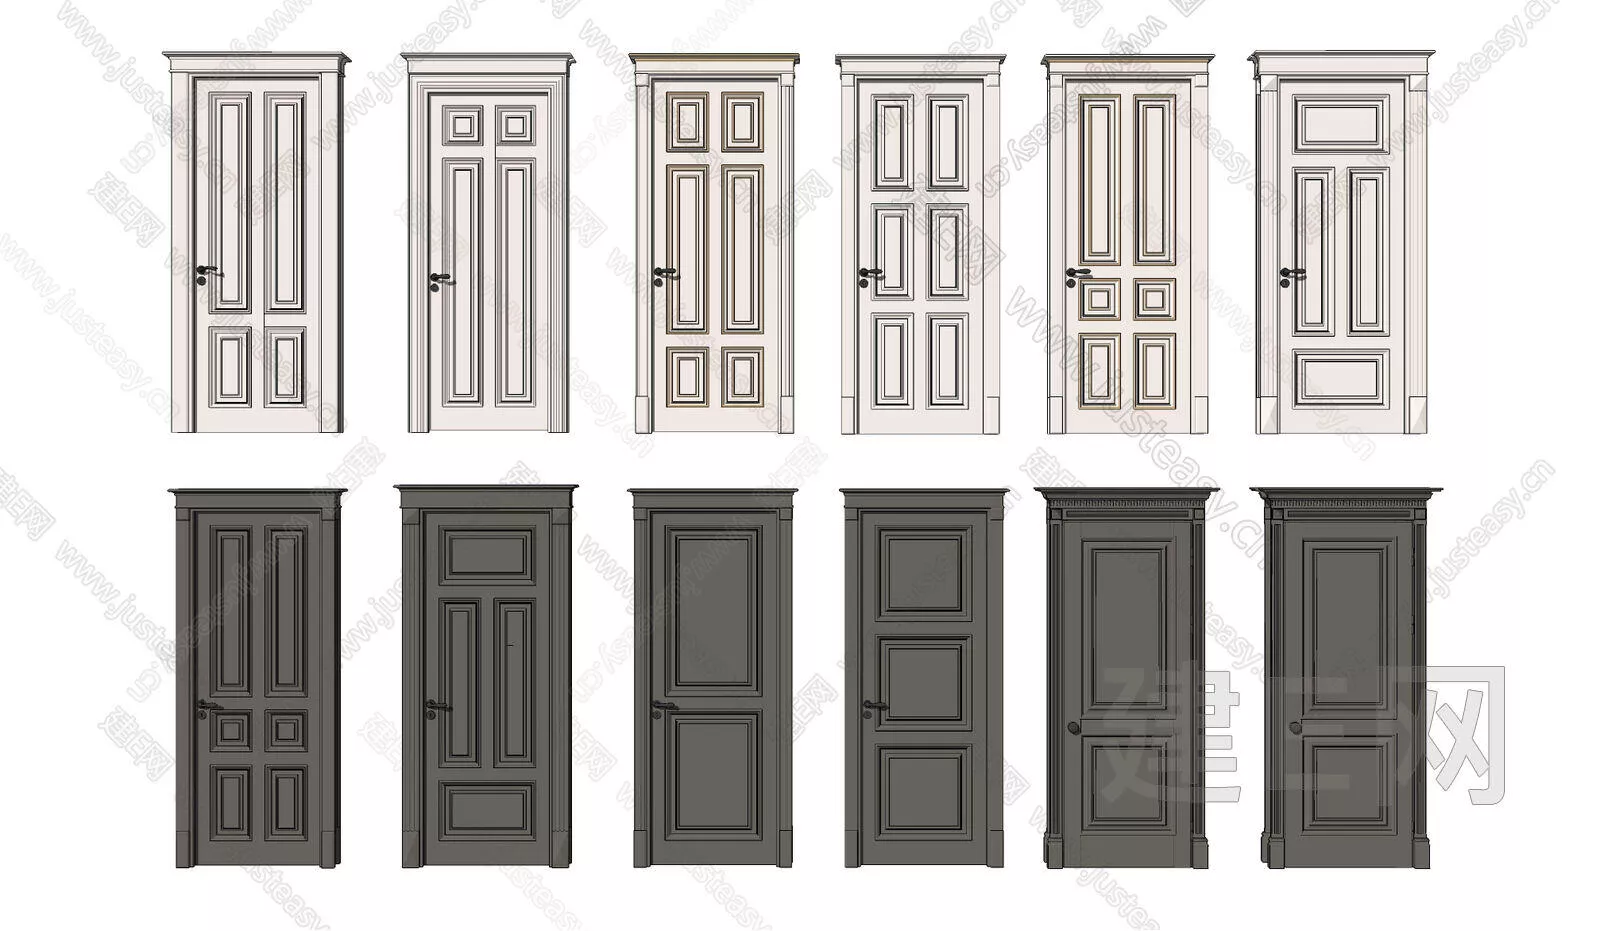 AMERICAN DOOR AND WINDOWS - SKETCHUP 3D MODEL - ENSCAPE - 115754258